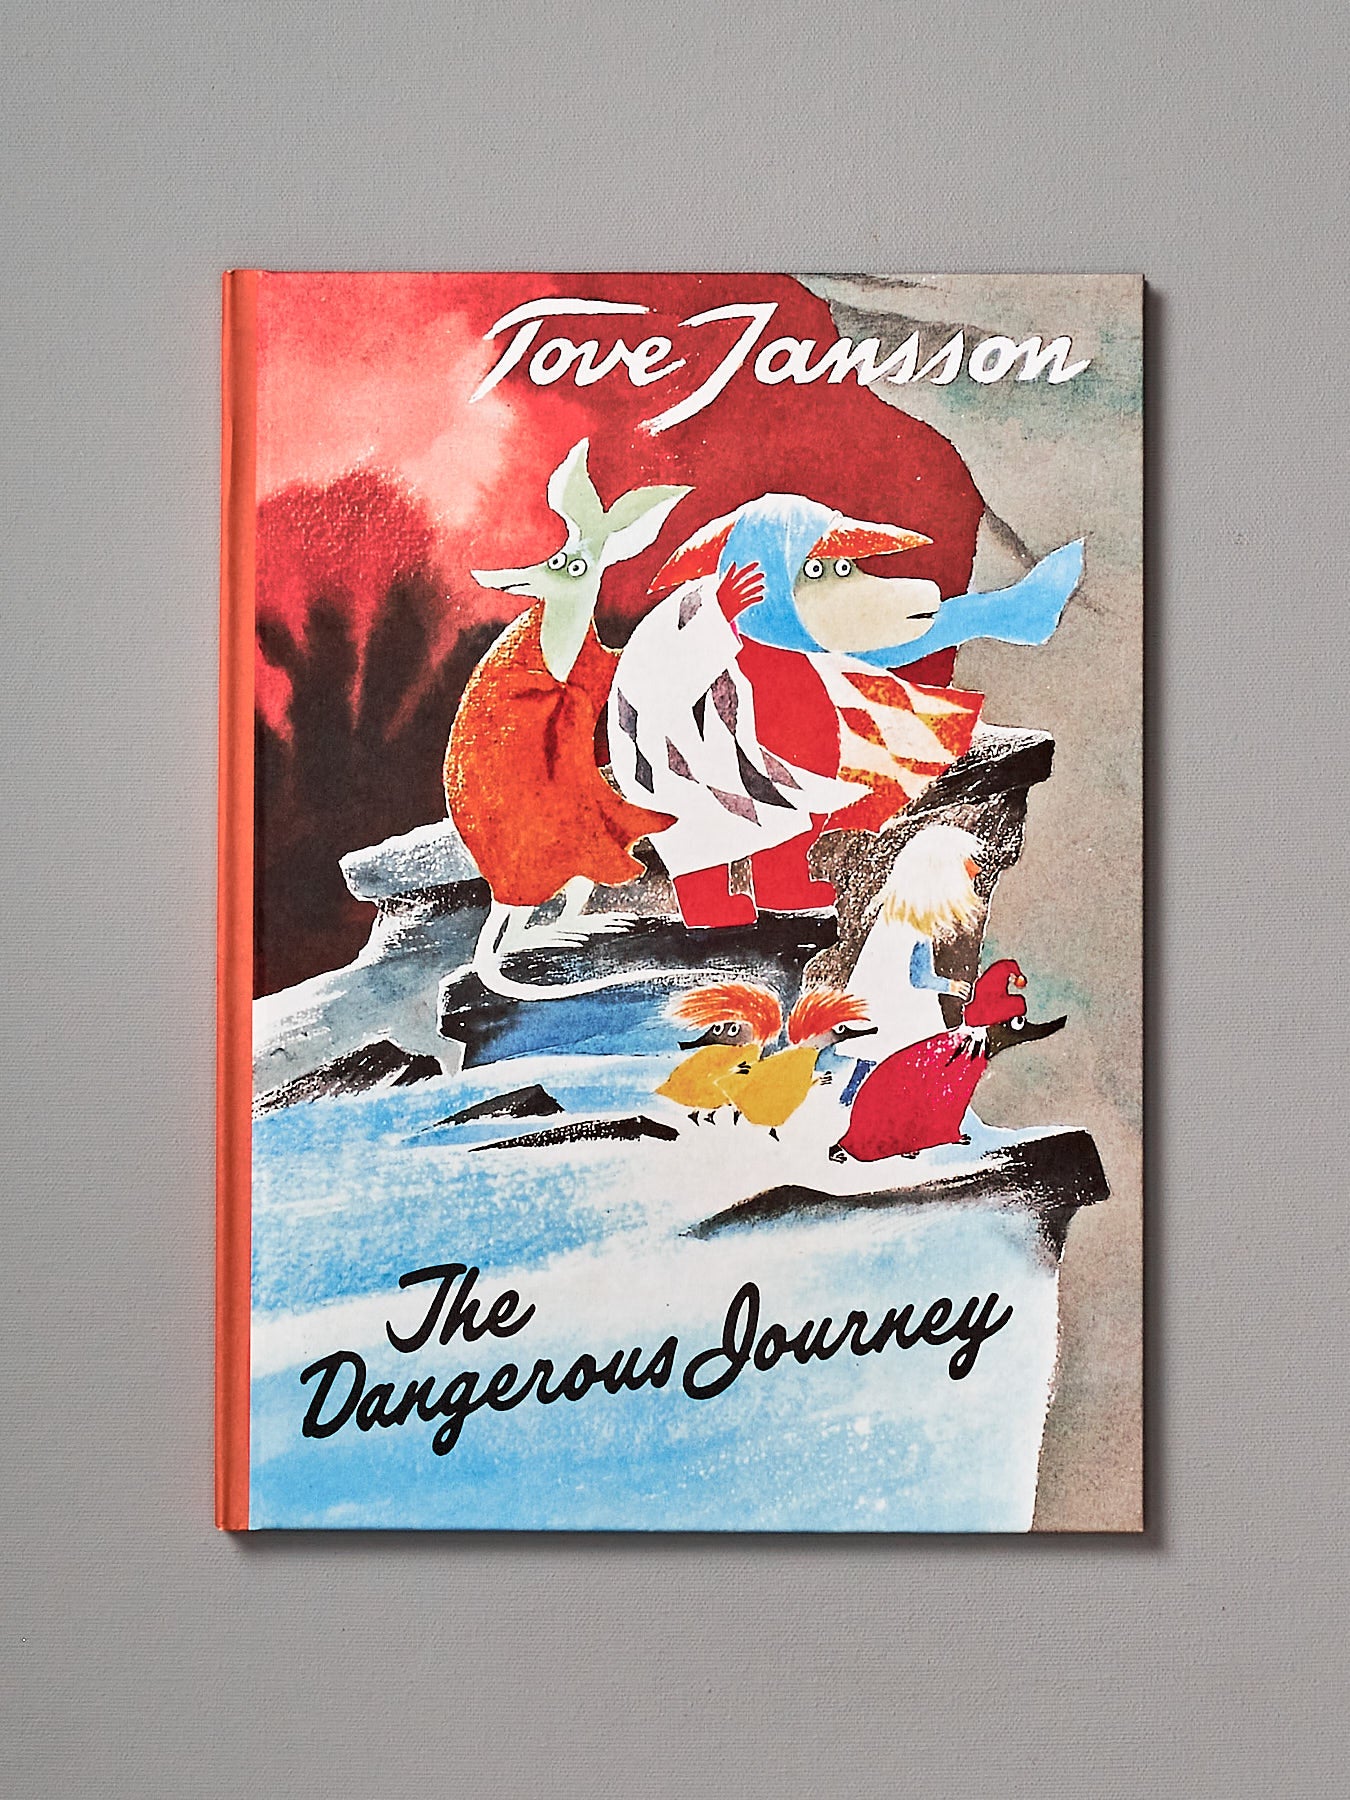 Tove Jansson's book, The Dangerous Journey.